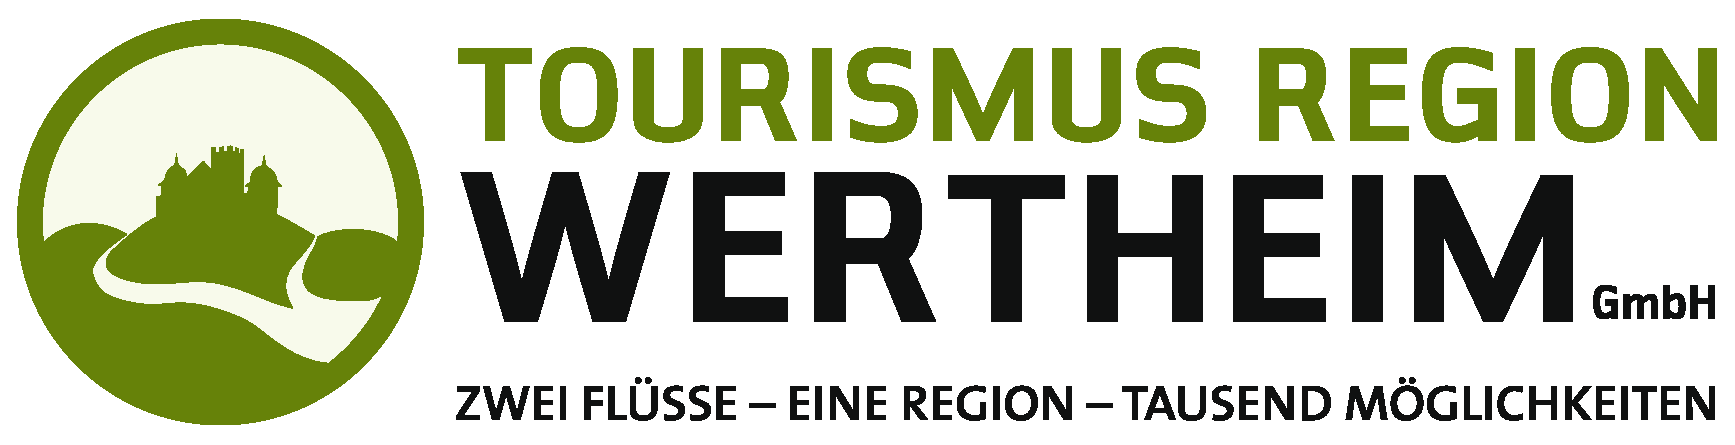 Tourismus Region Wertheim